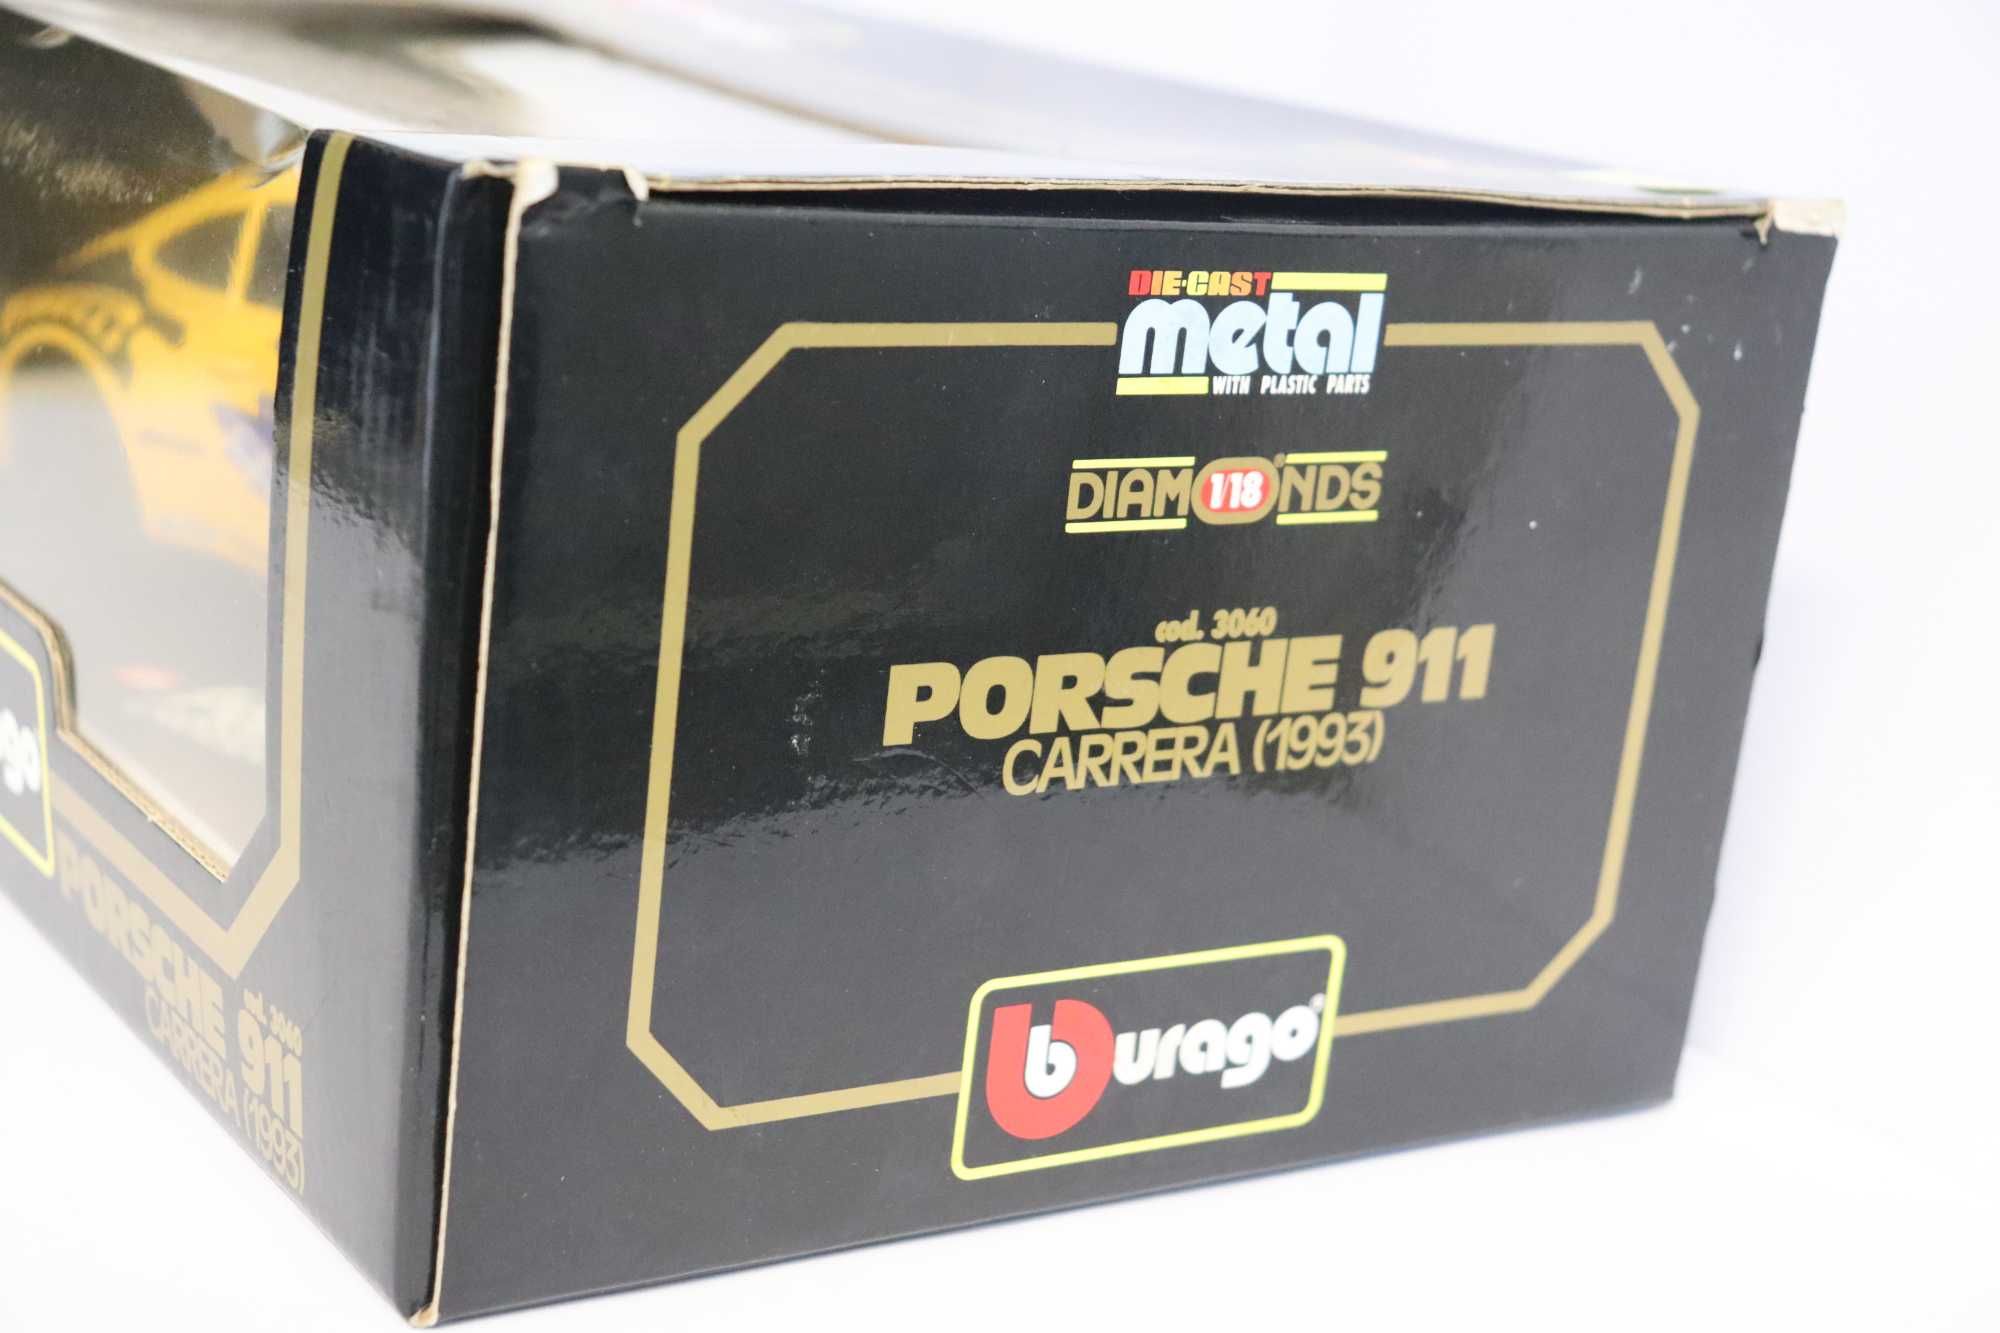 Porche 911 Carrera 1993